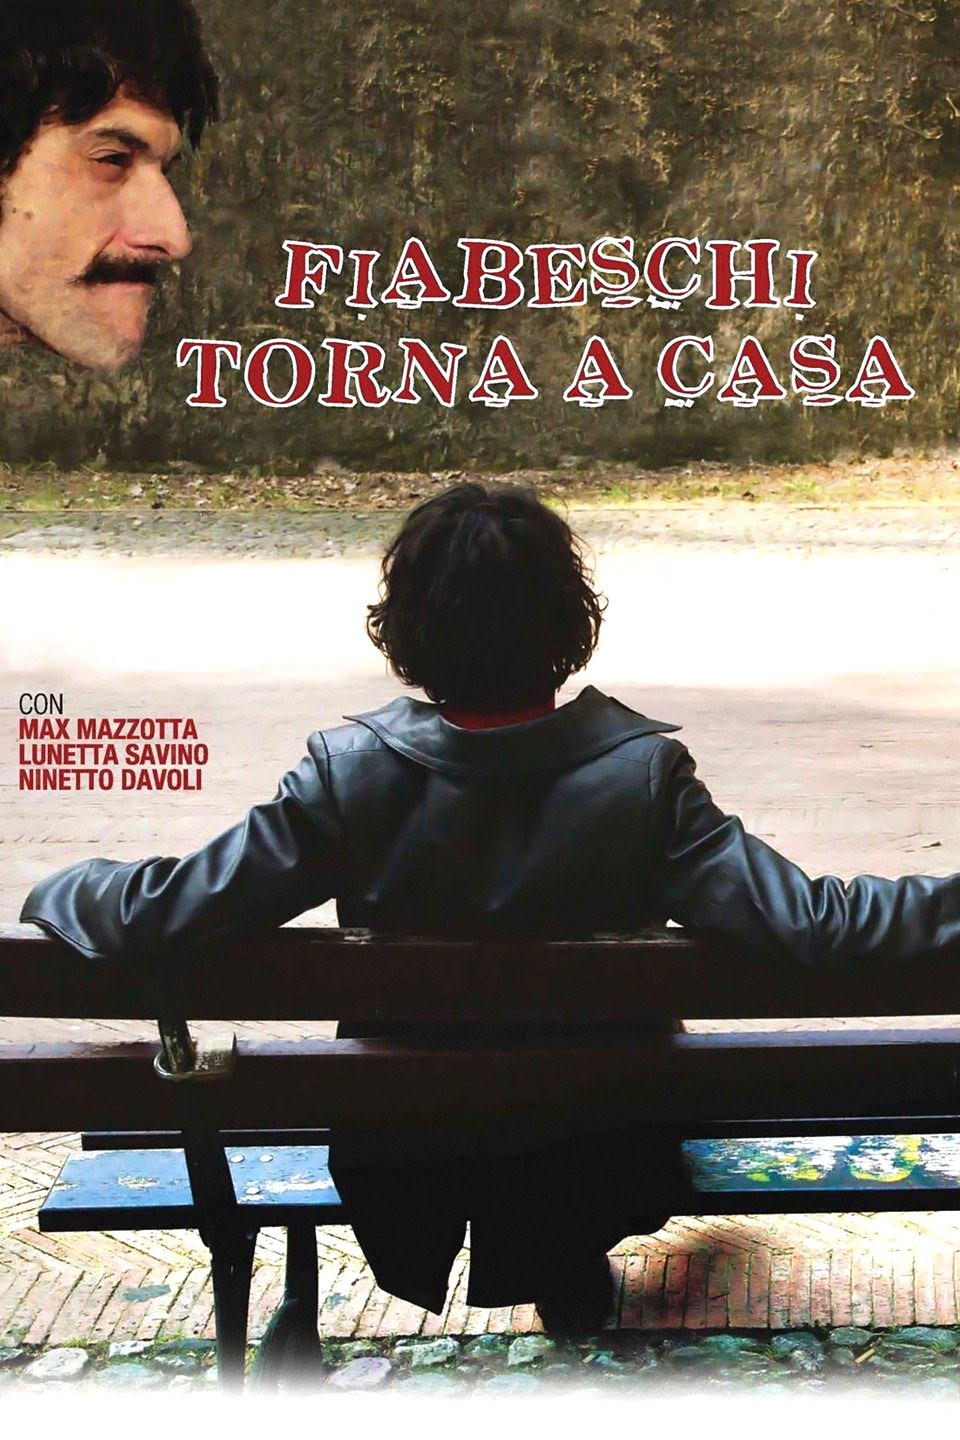 Fiabeschi torna a casa (2013)